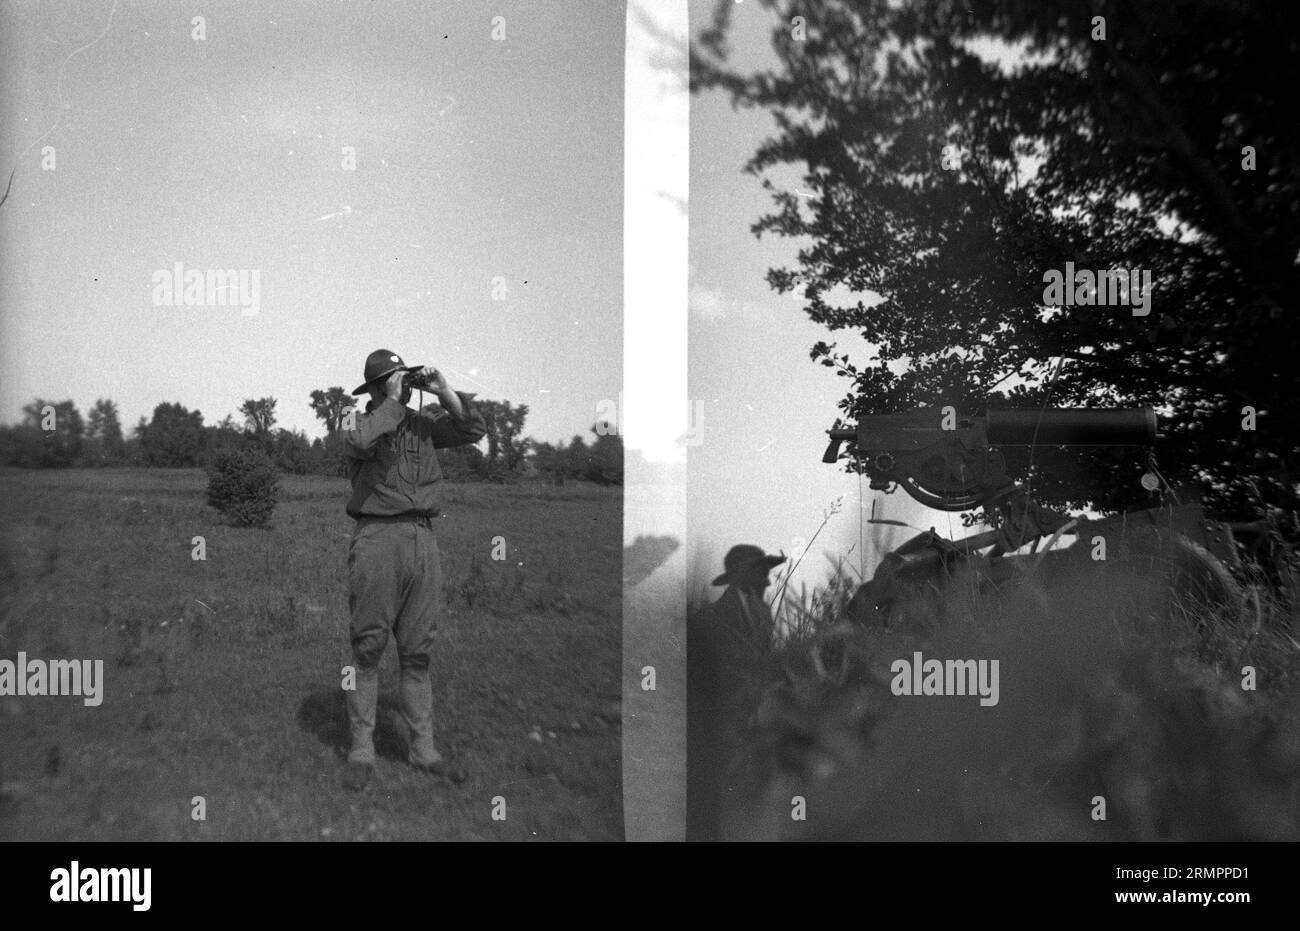 Soldat mit Fernglas und wassergekühlter M1917 Browning Maschinenpistole in Position. Mitglieder der 114. Infanteriedivision der US-Armee trainieren im Zweiten Weltkrieg gegen Deutschland in Europa. Stockfoto